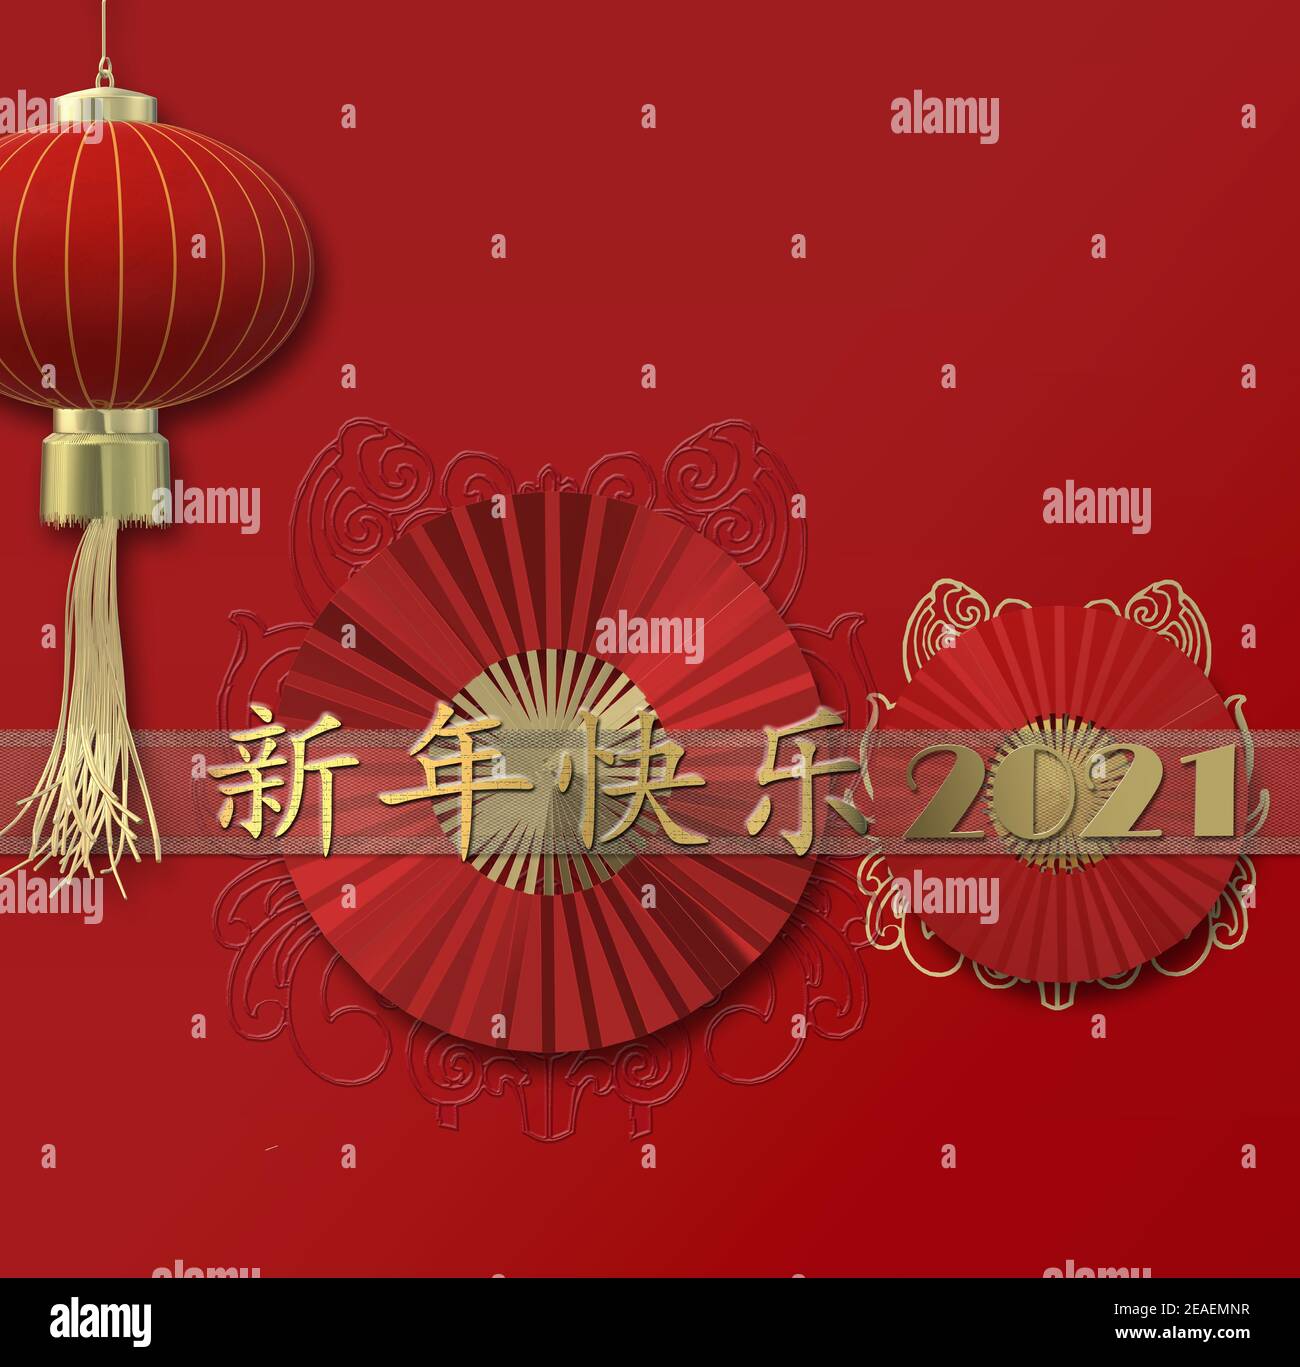 Bonne année chinoise. Ventilateurs en papier rouge, lanterne, sur fond rouge. Vacances traditionnelles lunaires nouvel an. Texte doré traduction en chinois Bonne Année. Banque D'Images